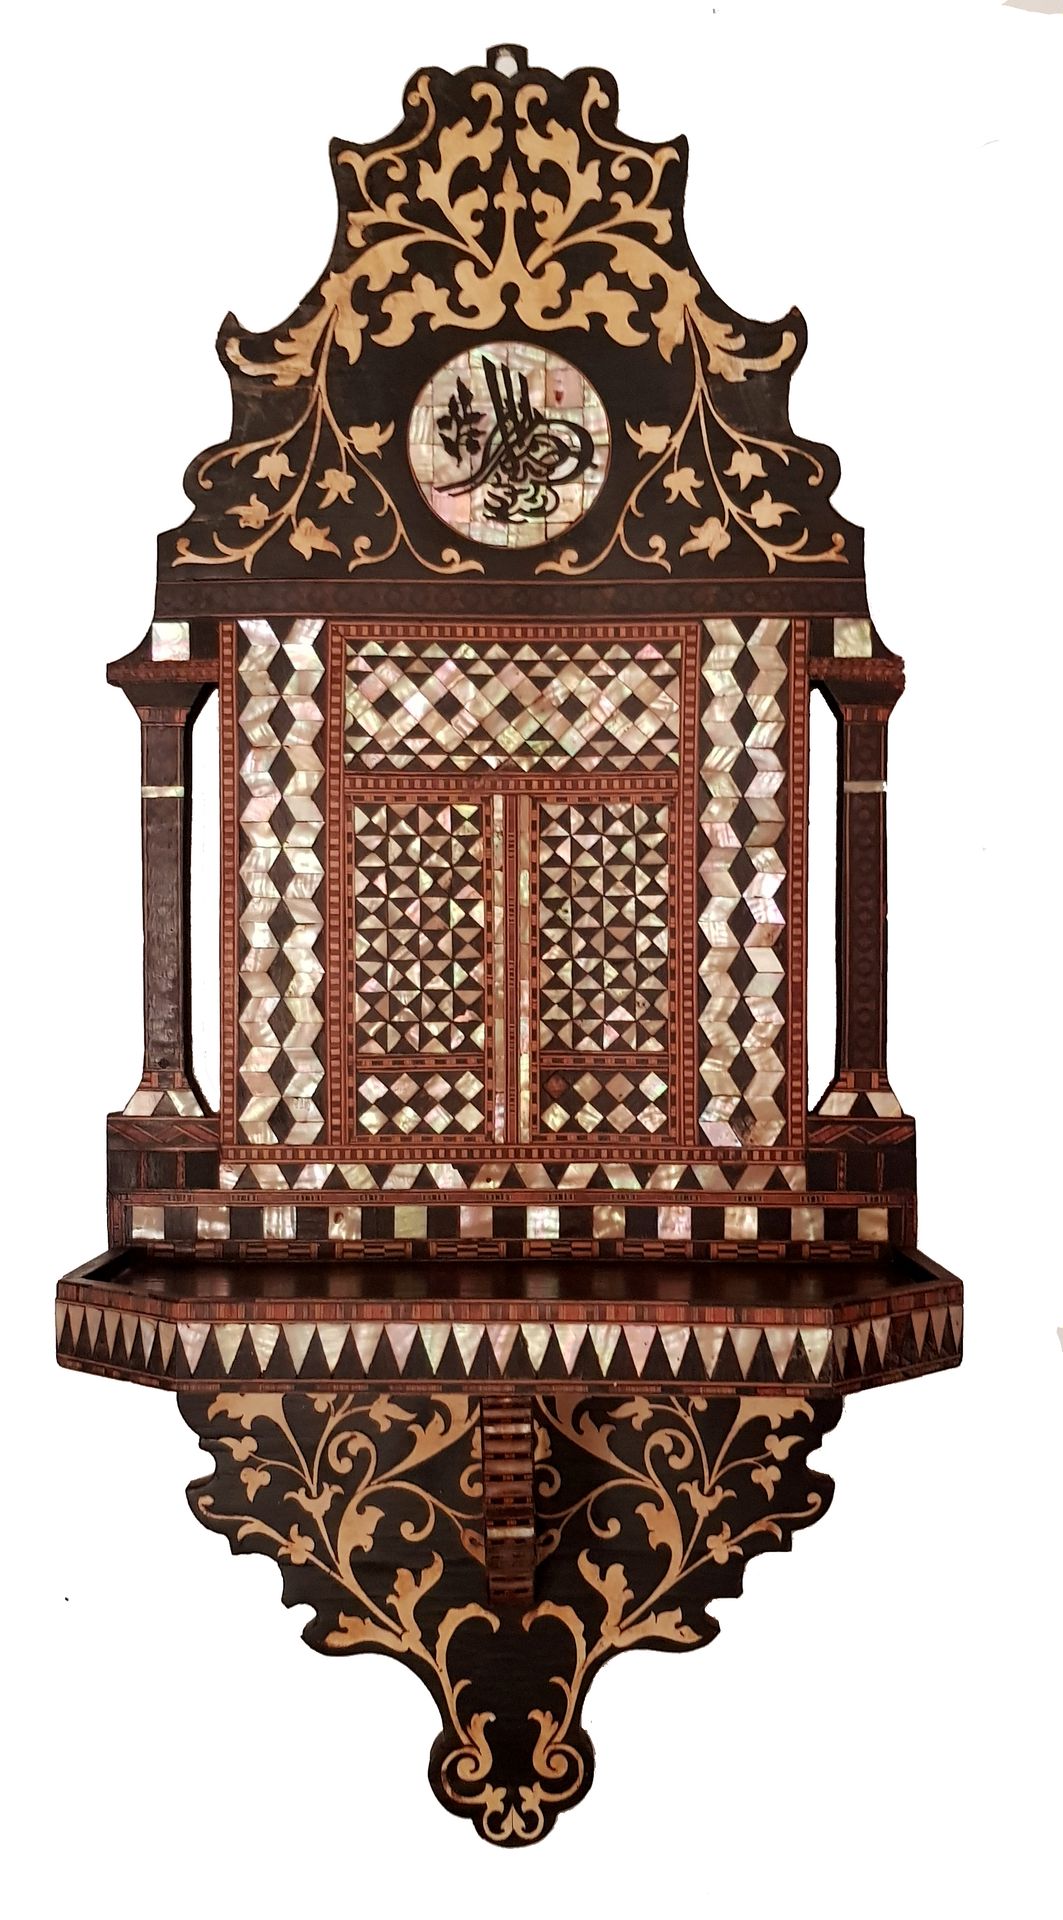 Kavukluk ottoman c.1900 
Kavukluk头巾架，奥斯曼帝国约1900年，由各种异国木材制成，完全镶嵌着木材和珍珠母，踏板上装饰着美丽的&hellip;